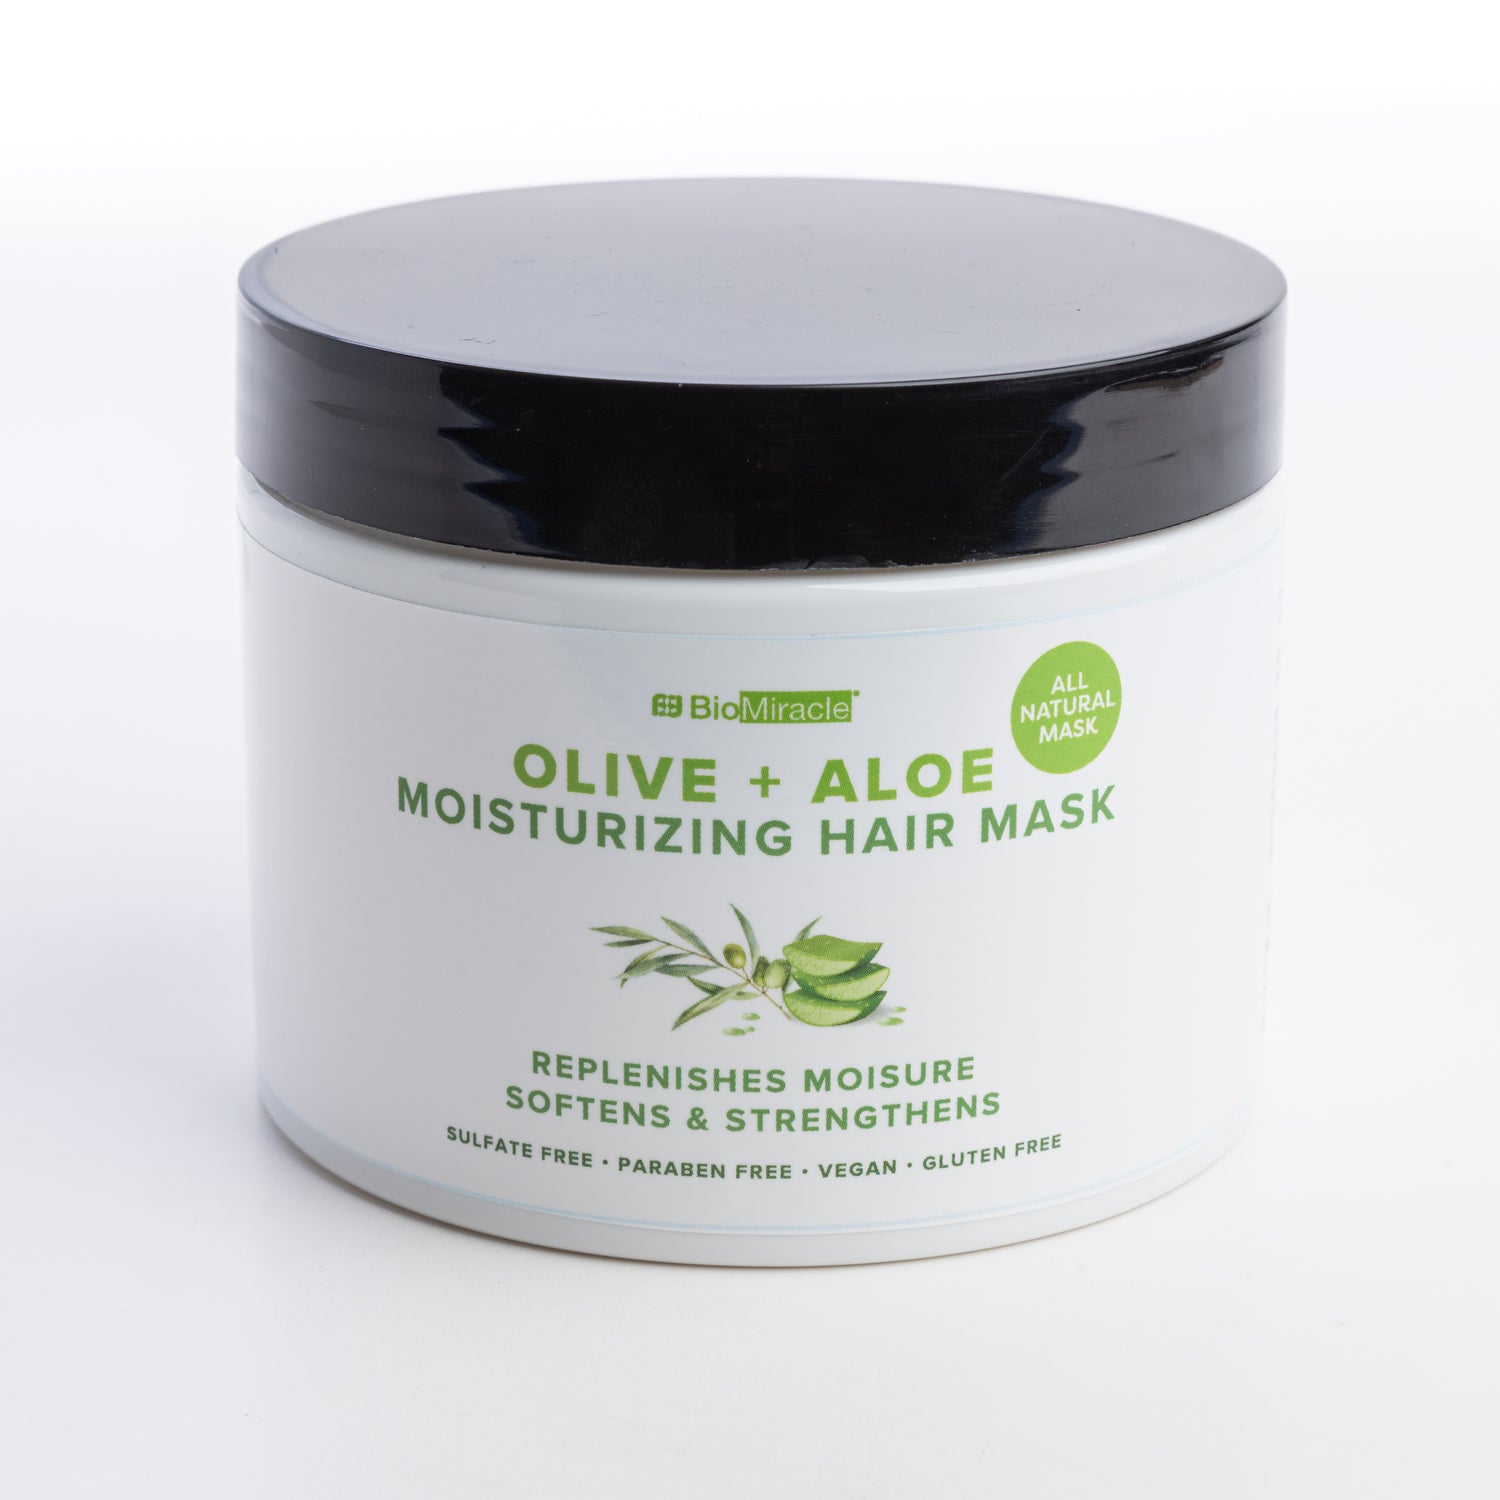 Olive + Aloe Moisturizing Hair Mask